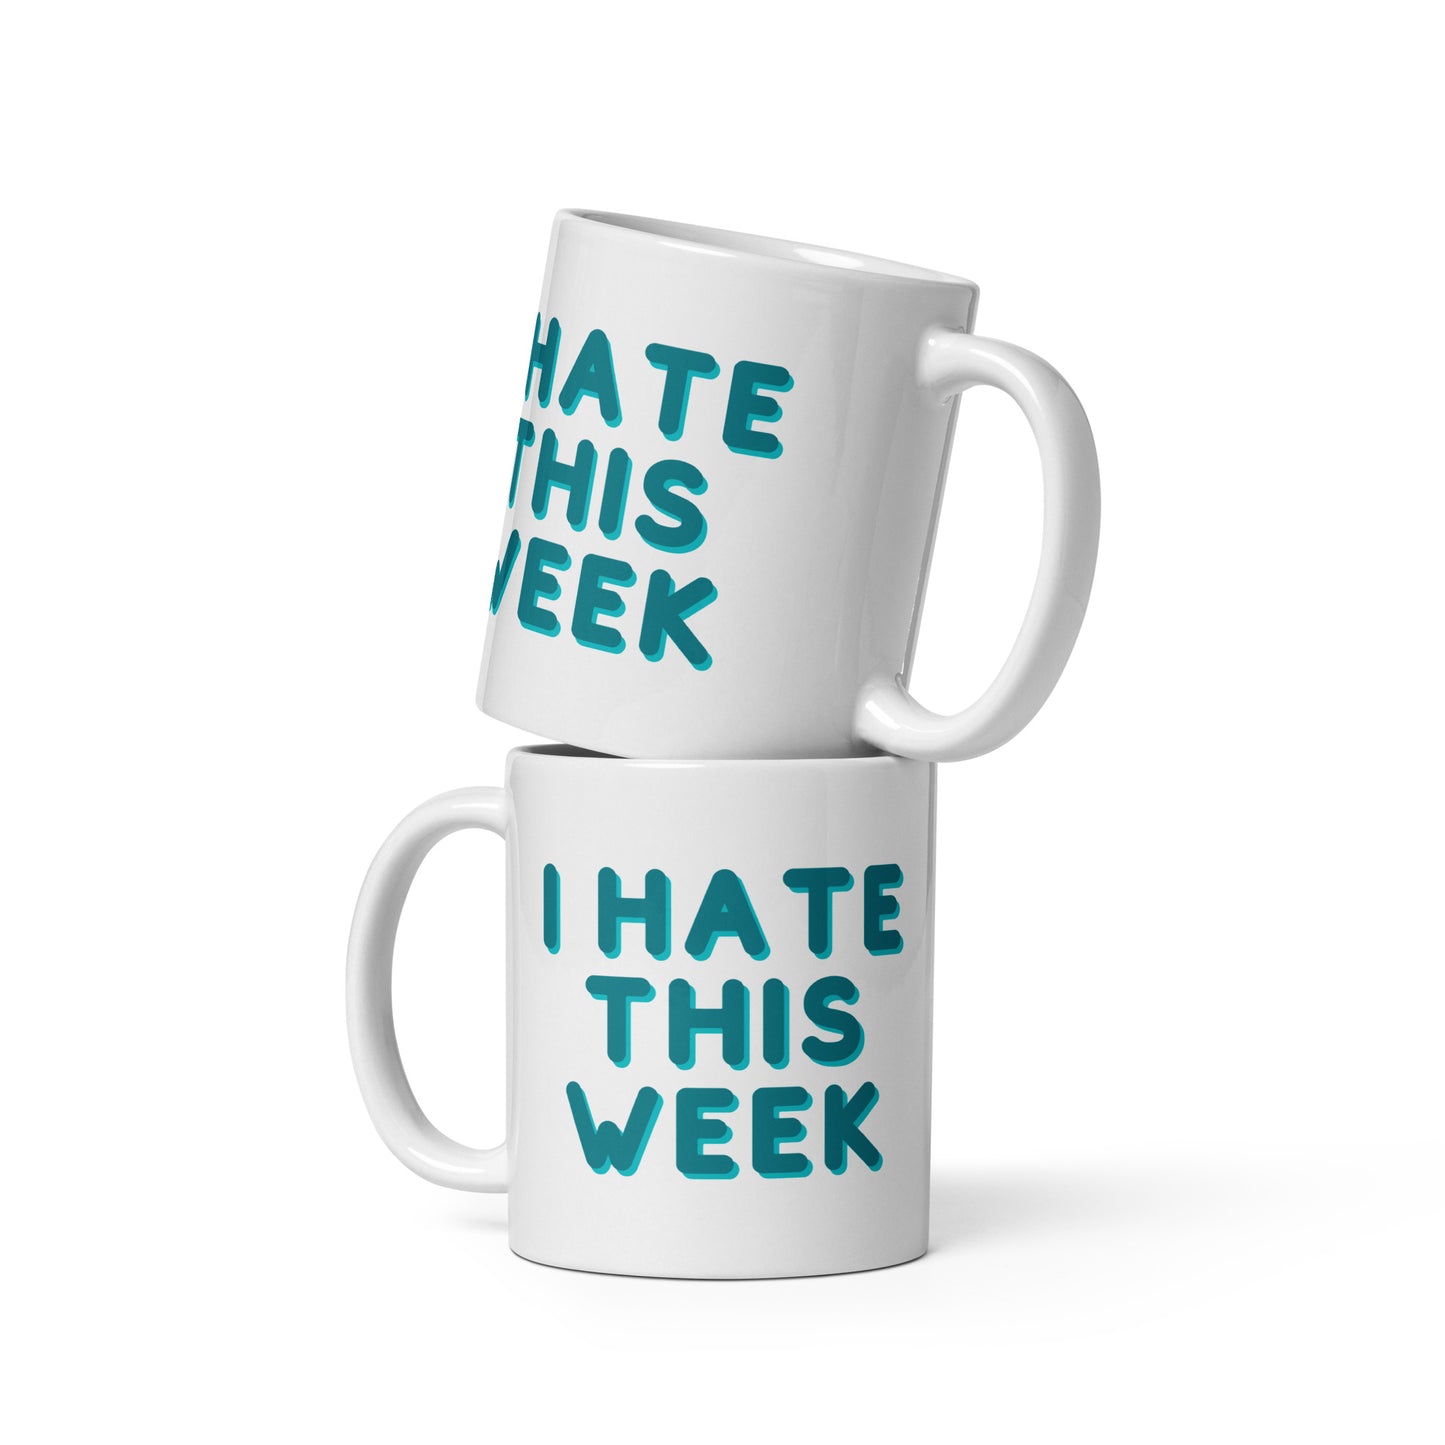 I Hate This Week mug